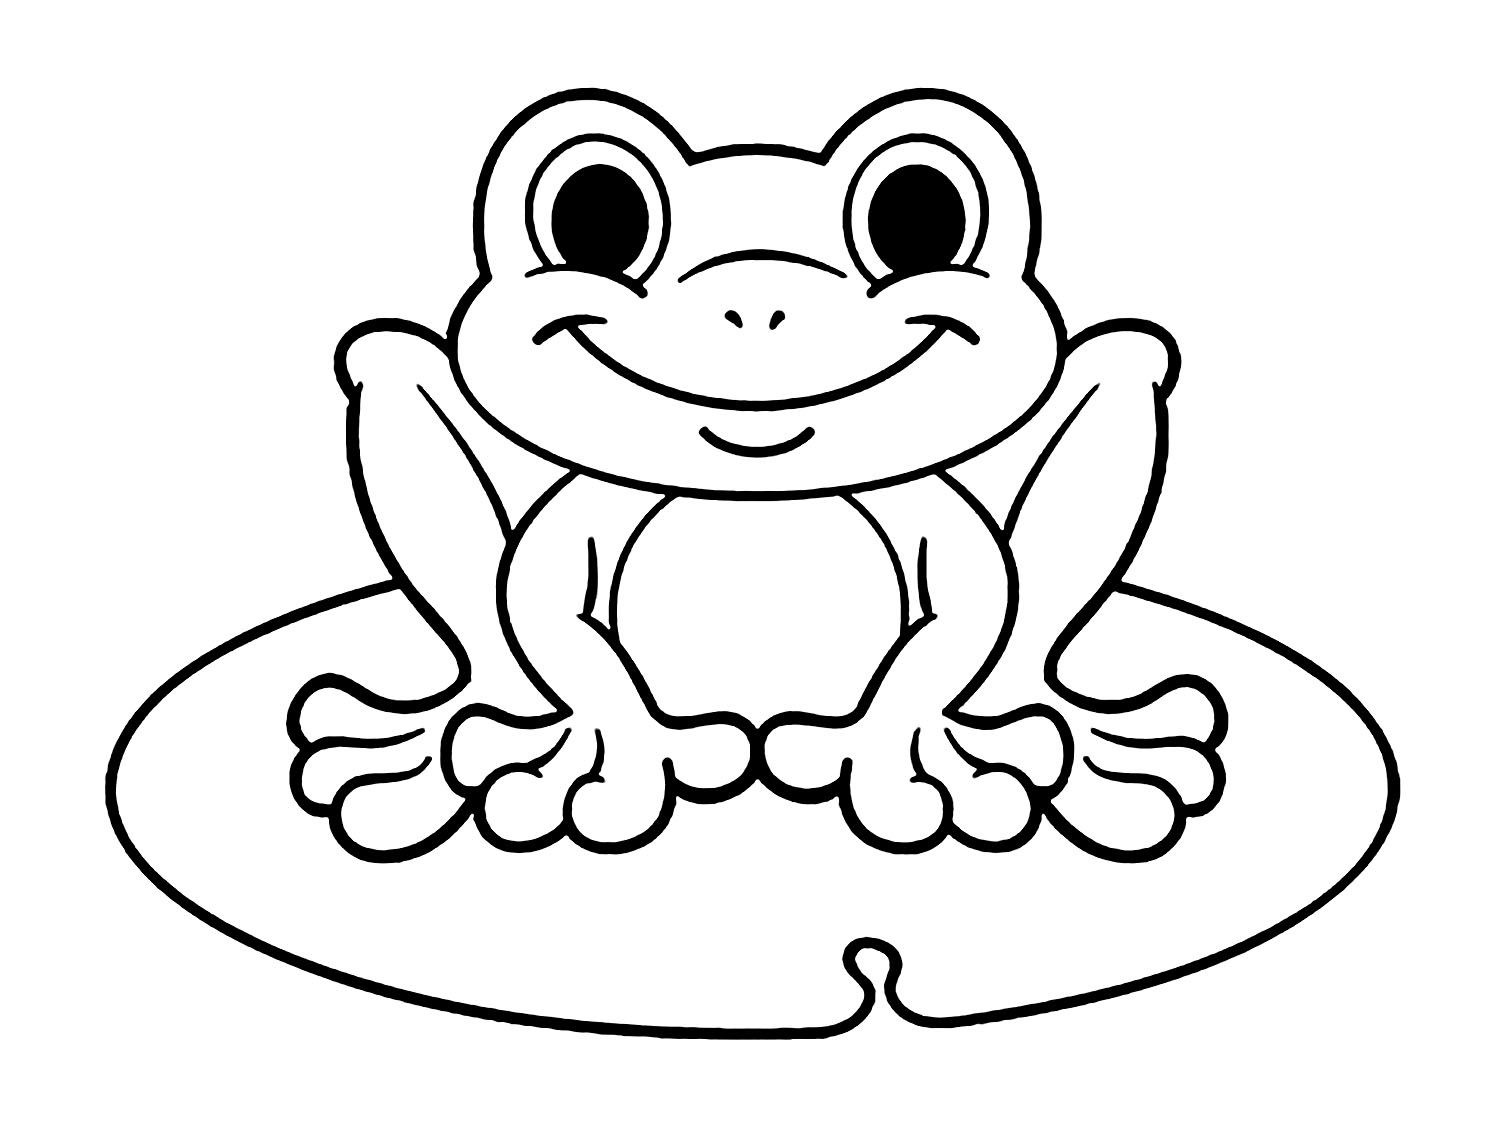 Print Frog For Children